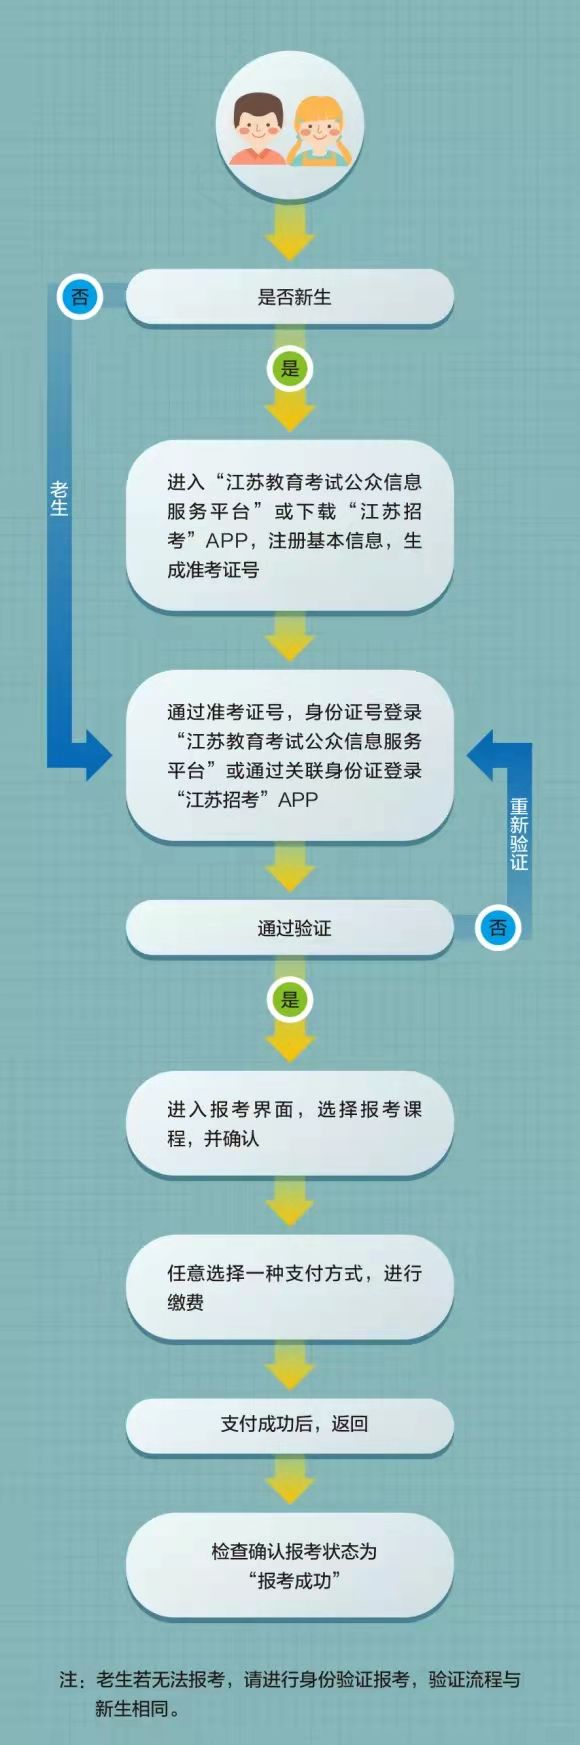 江苏省高等教育自学考试网上报名流程图.jpg